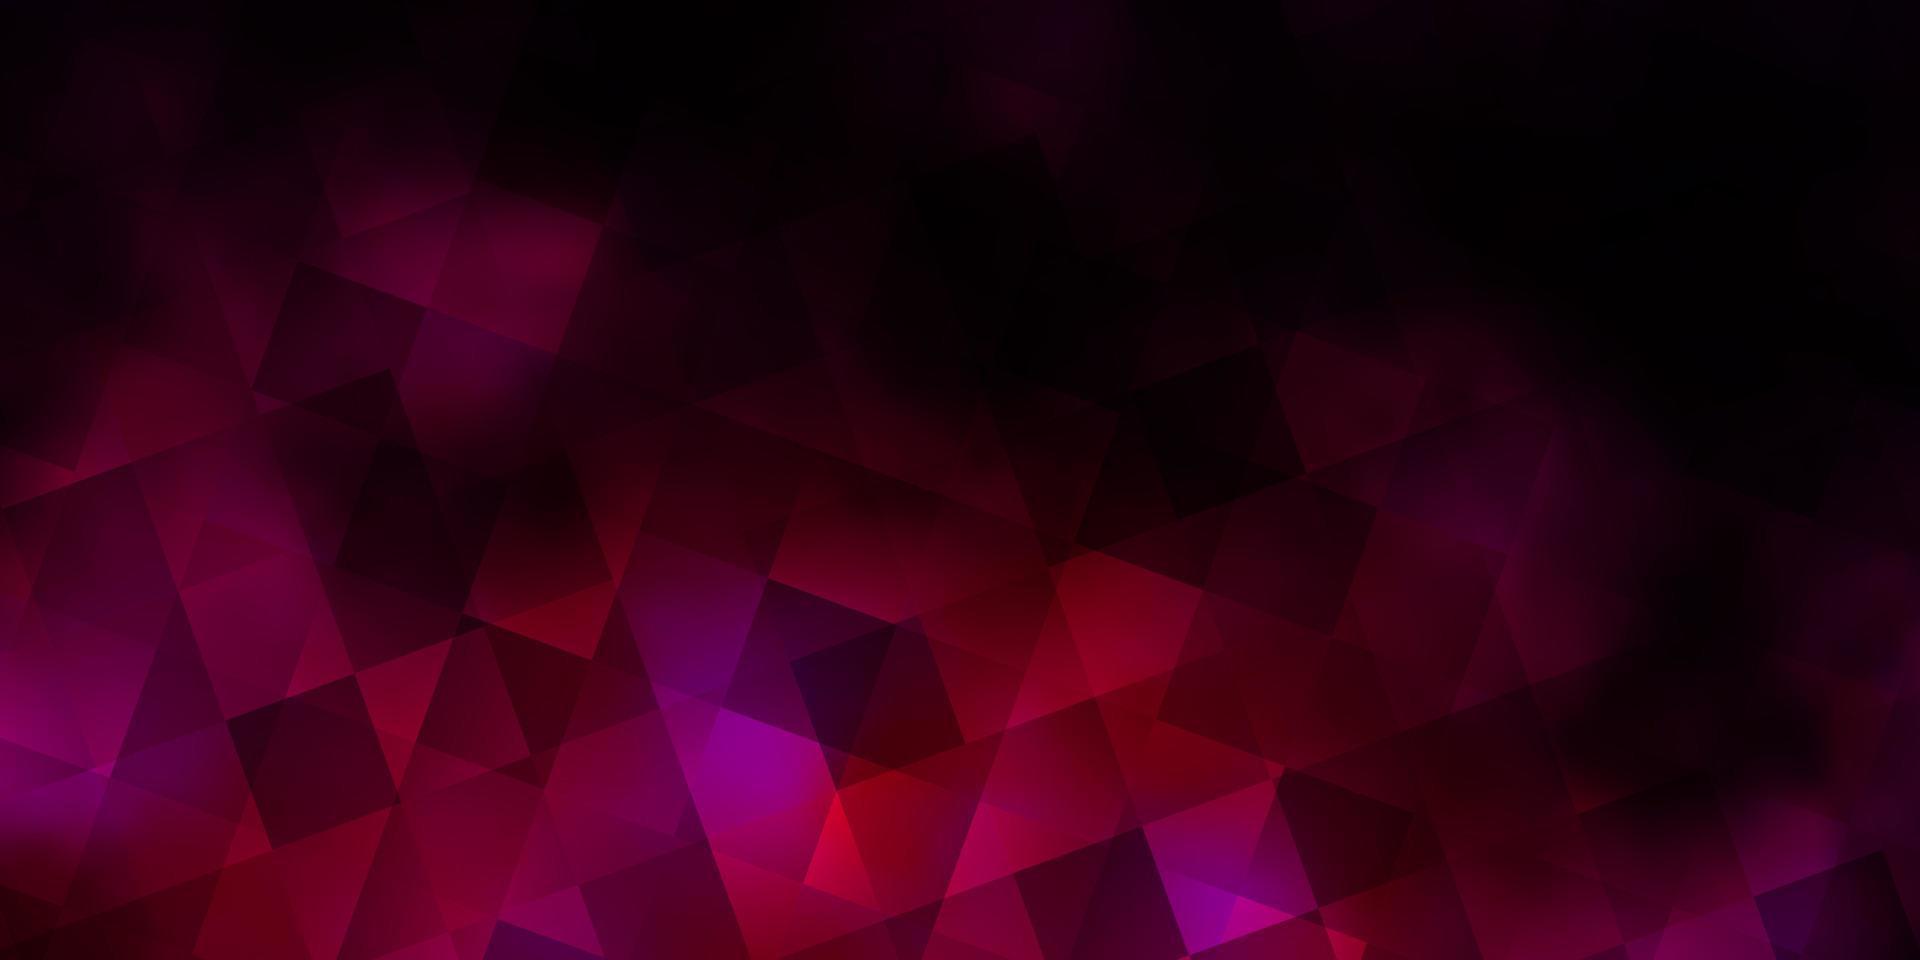 padrão de vetor rosa escuro com estilo poligonal com cubos.